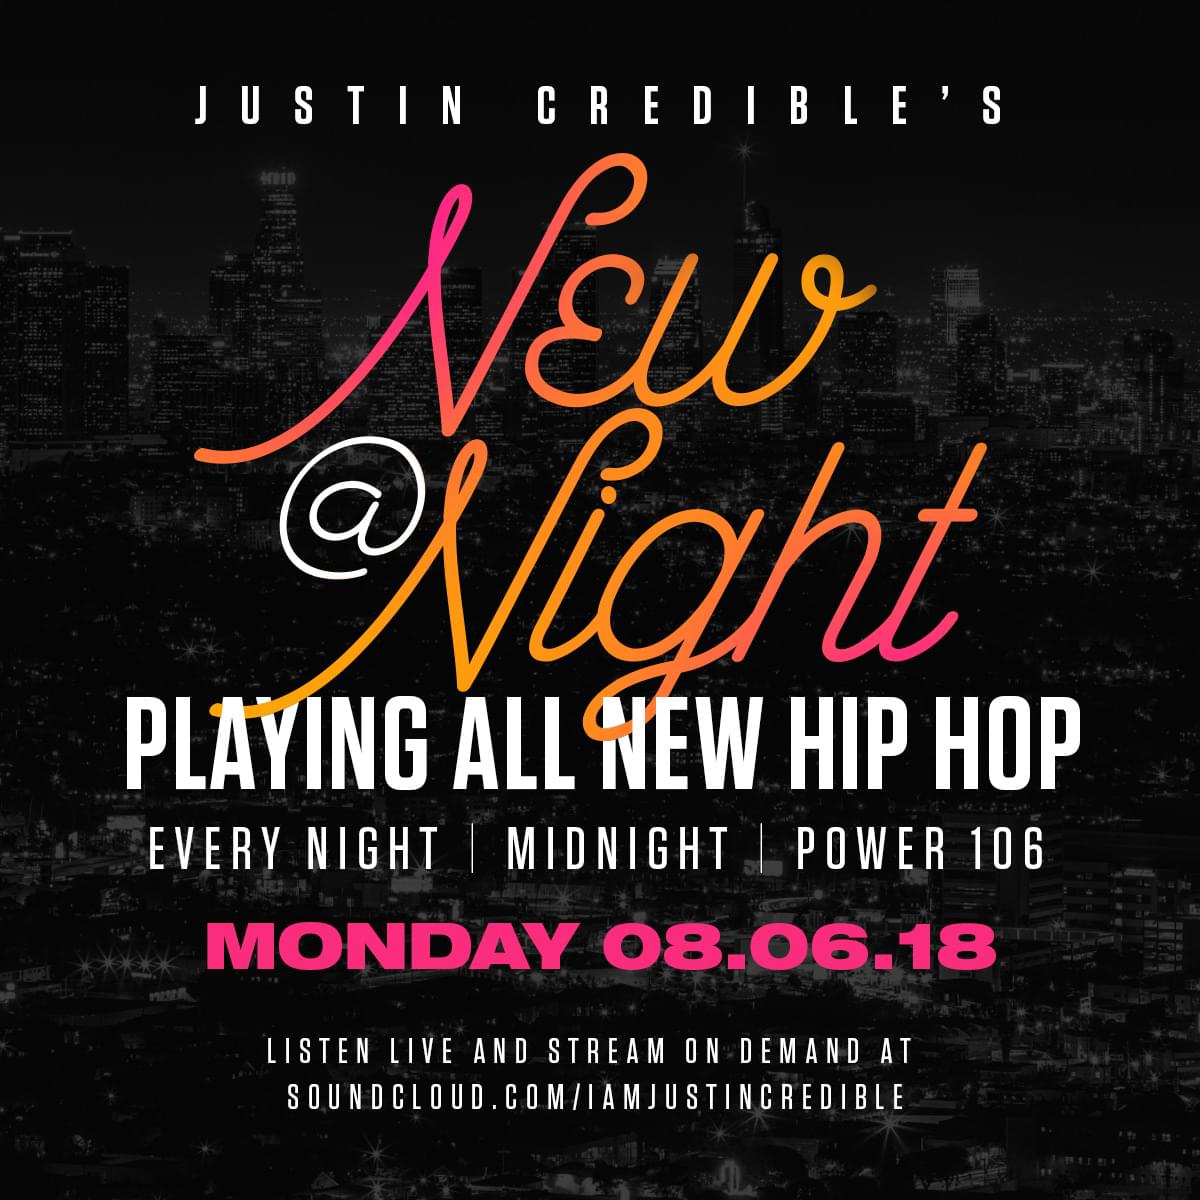 Justin Credible’s “New At Night” 8.06.18